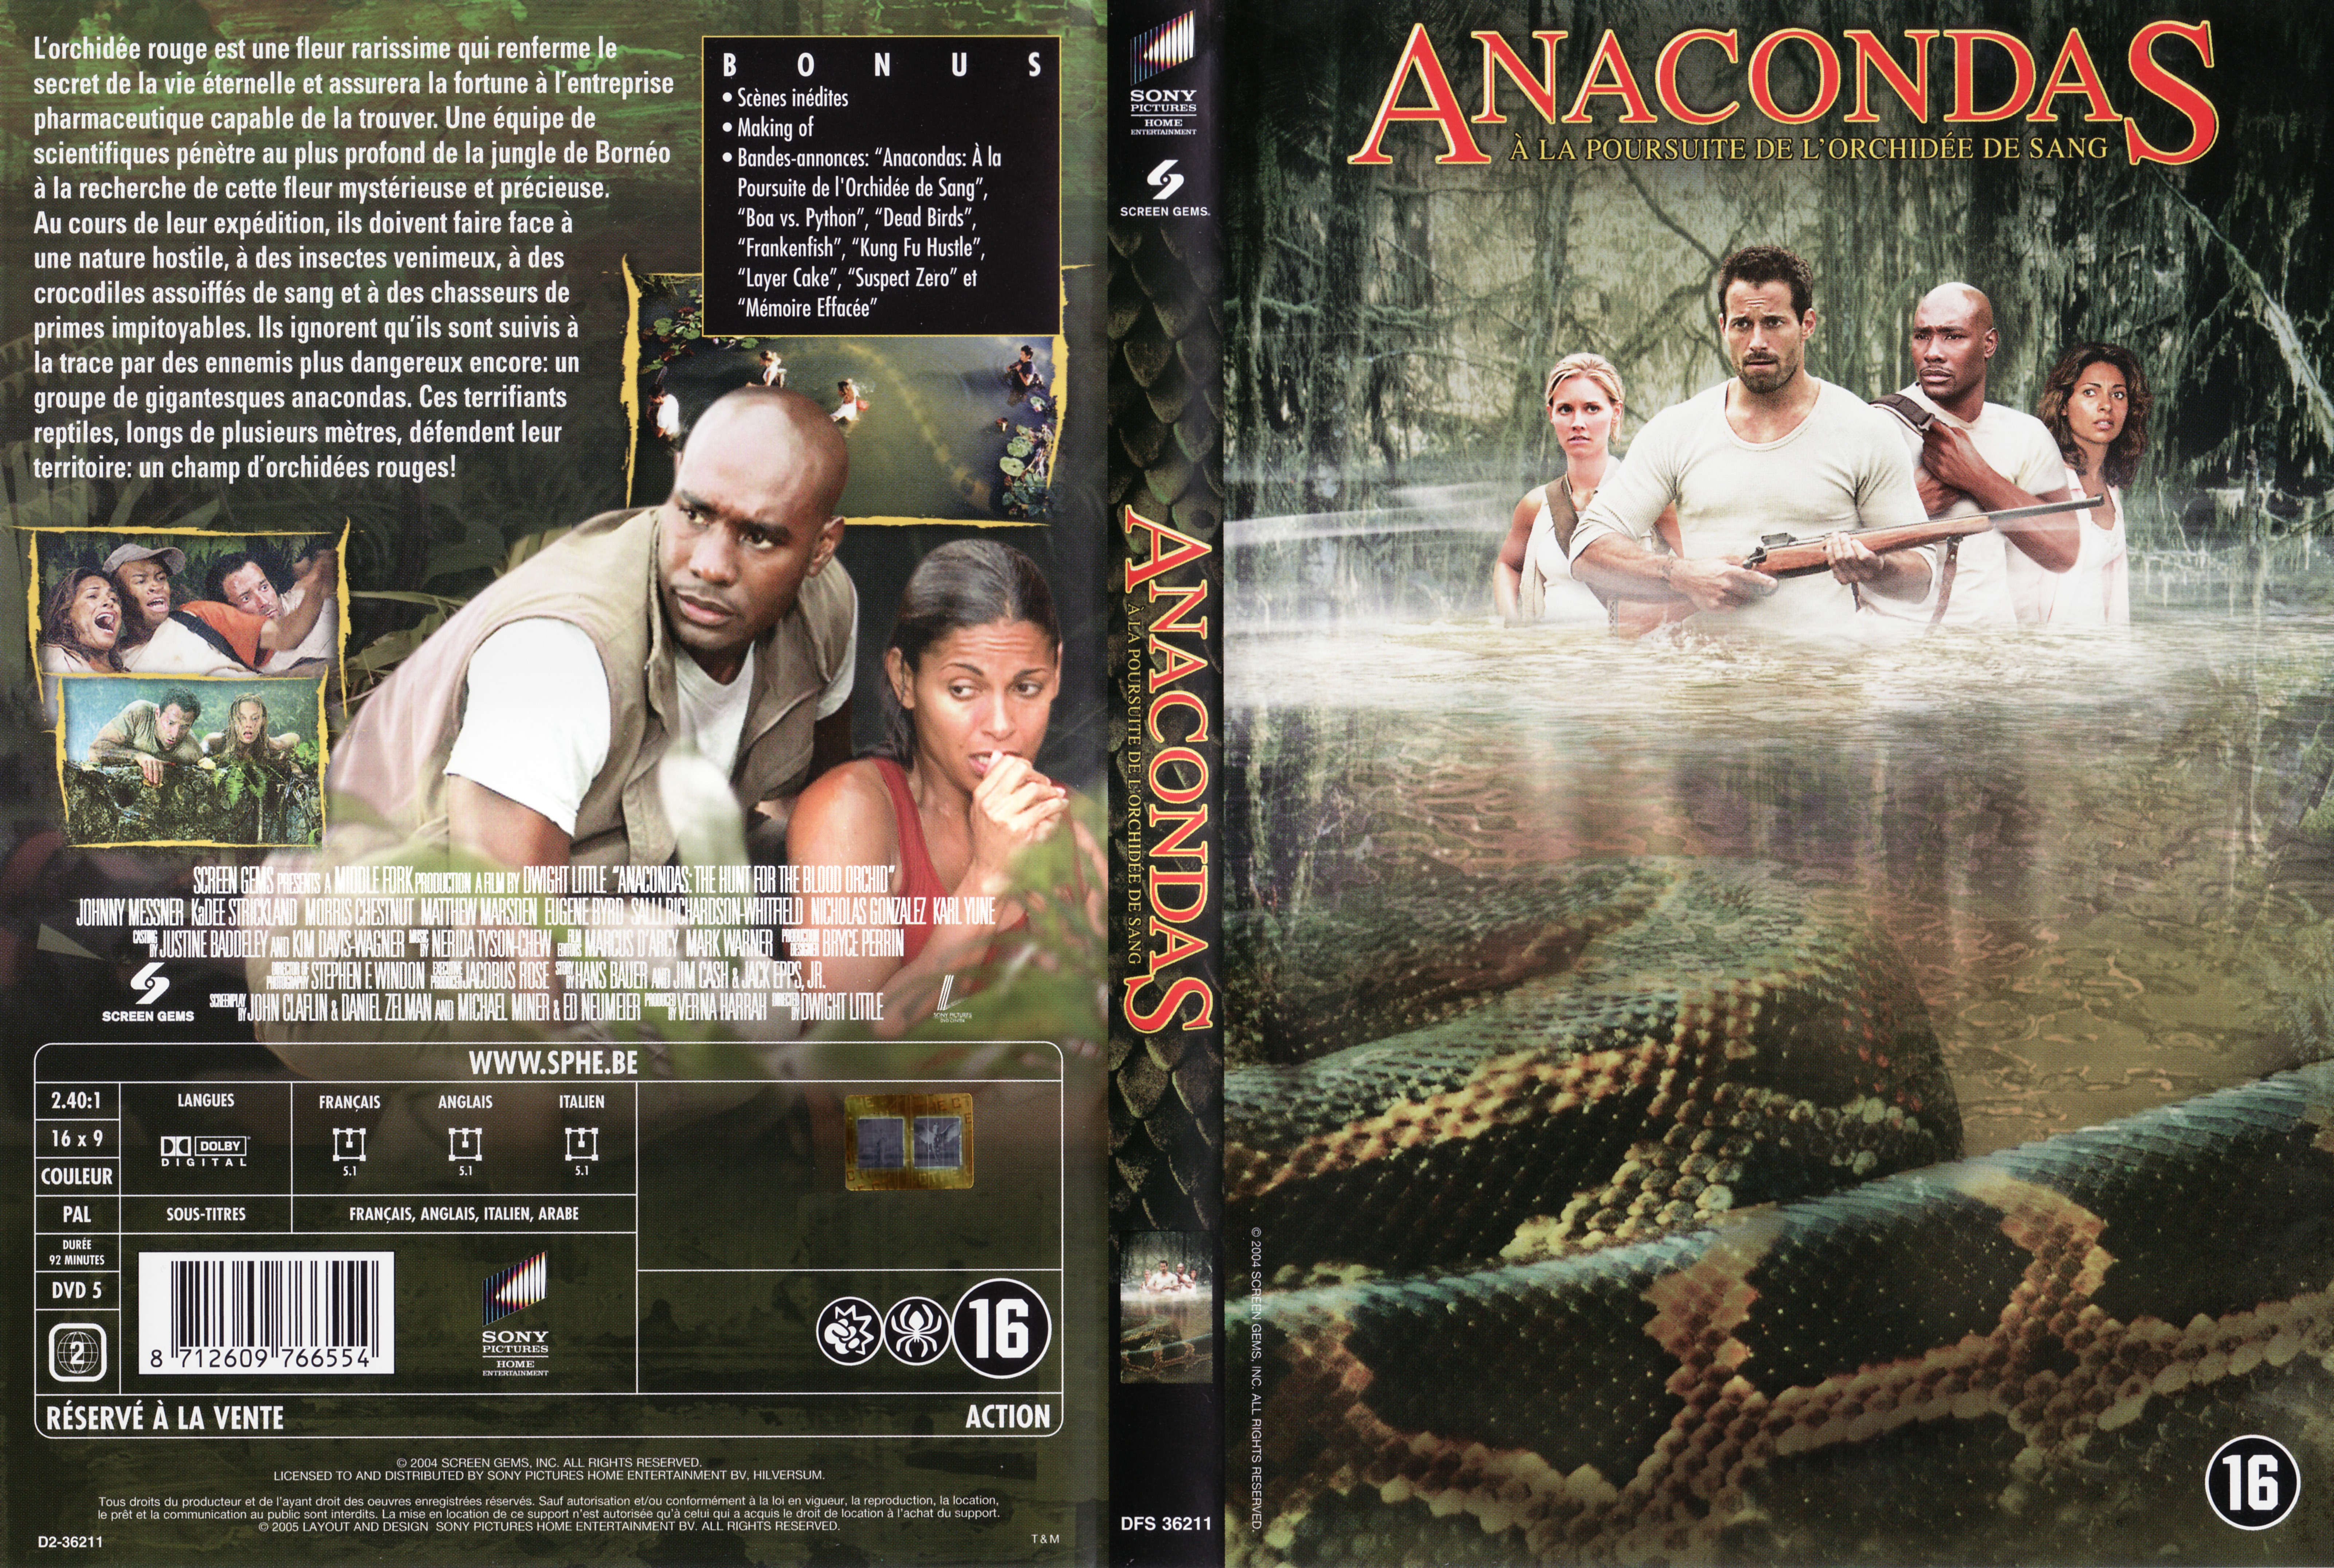 Jaquette DVD Anacondas v2